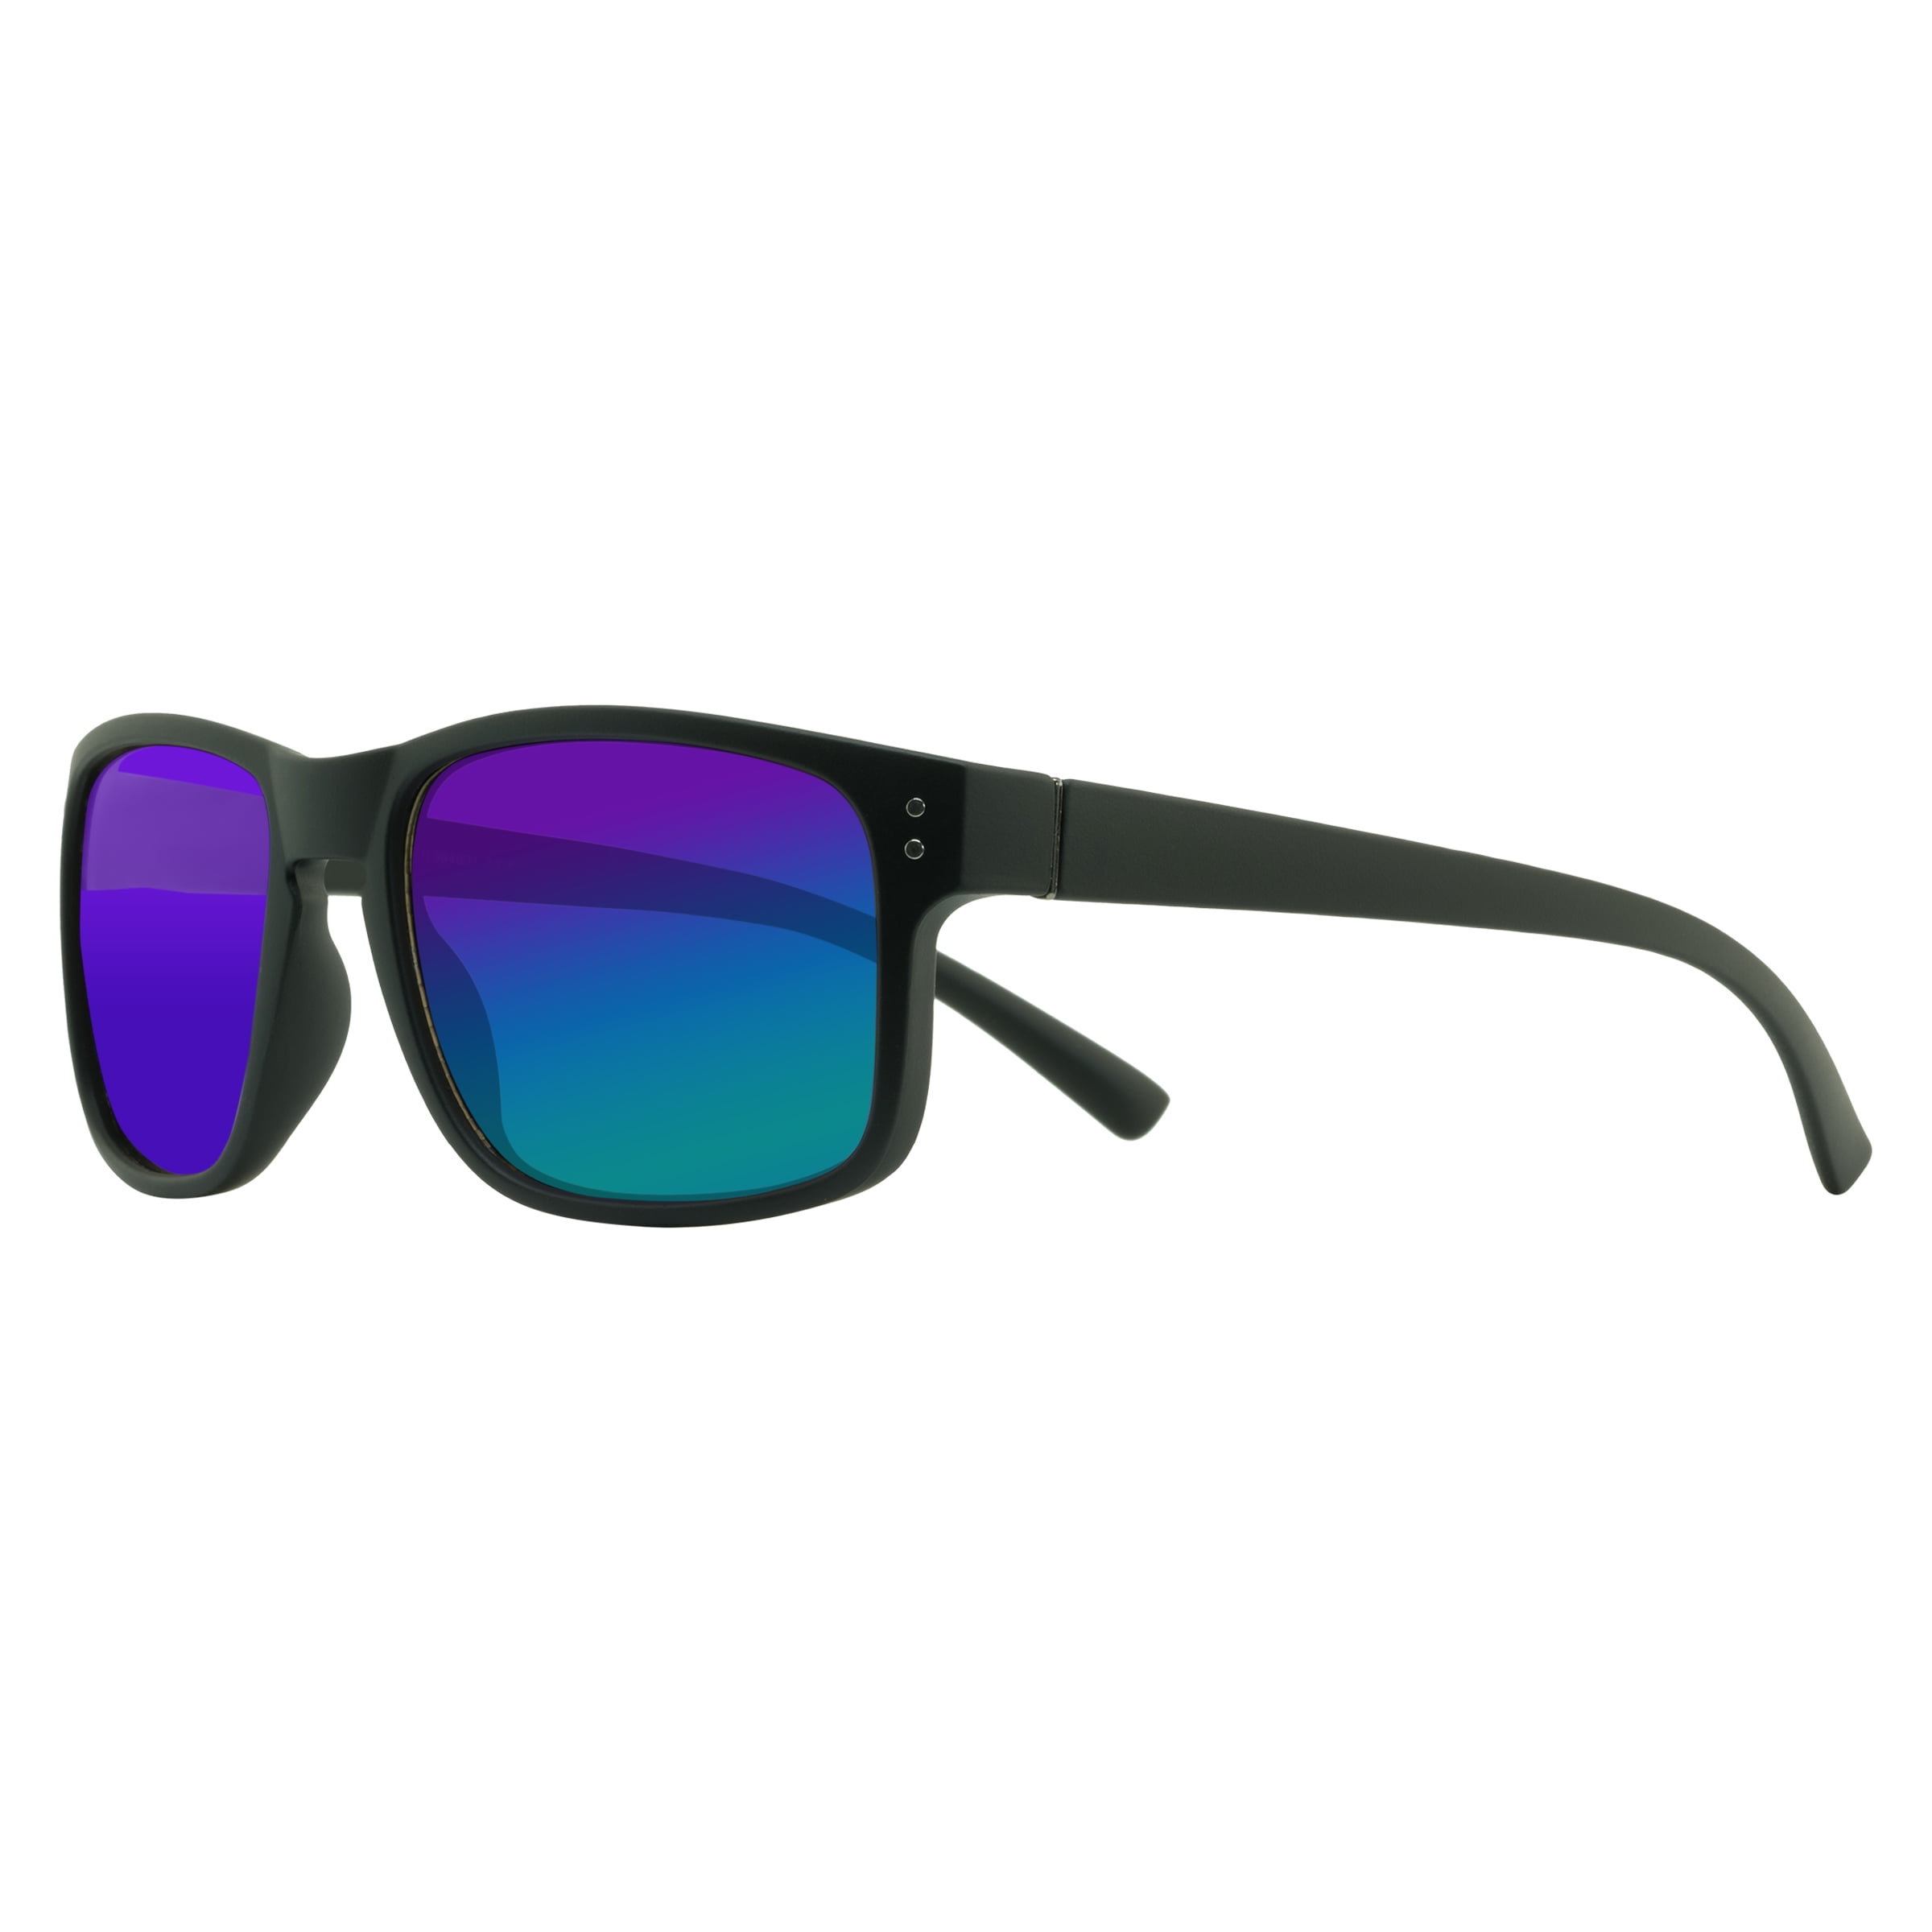 Piranha Eyewear Madison II Square Black Sunglasses with Keyhole Bridge -  Unisex 